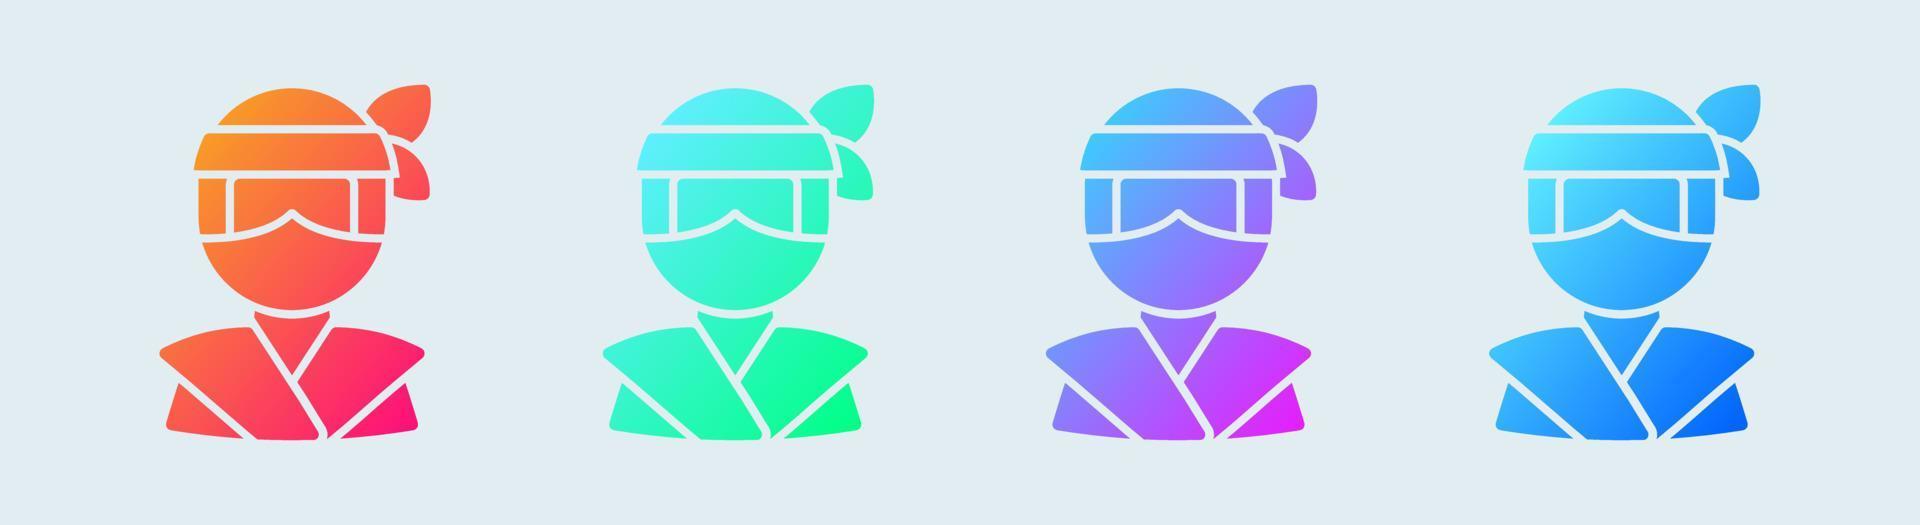 icona solida ninja in colori sfumati. illustrazione vettoriale dei segni del guerriero giapponese.